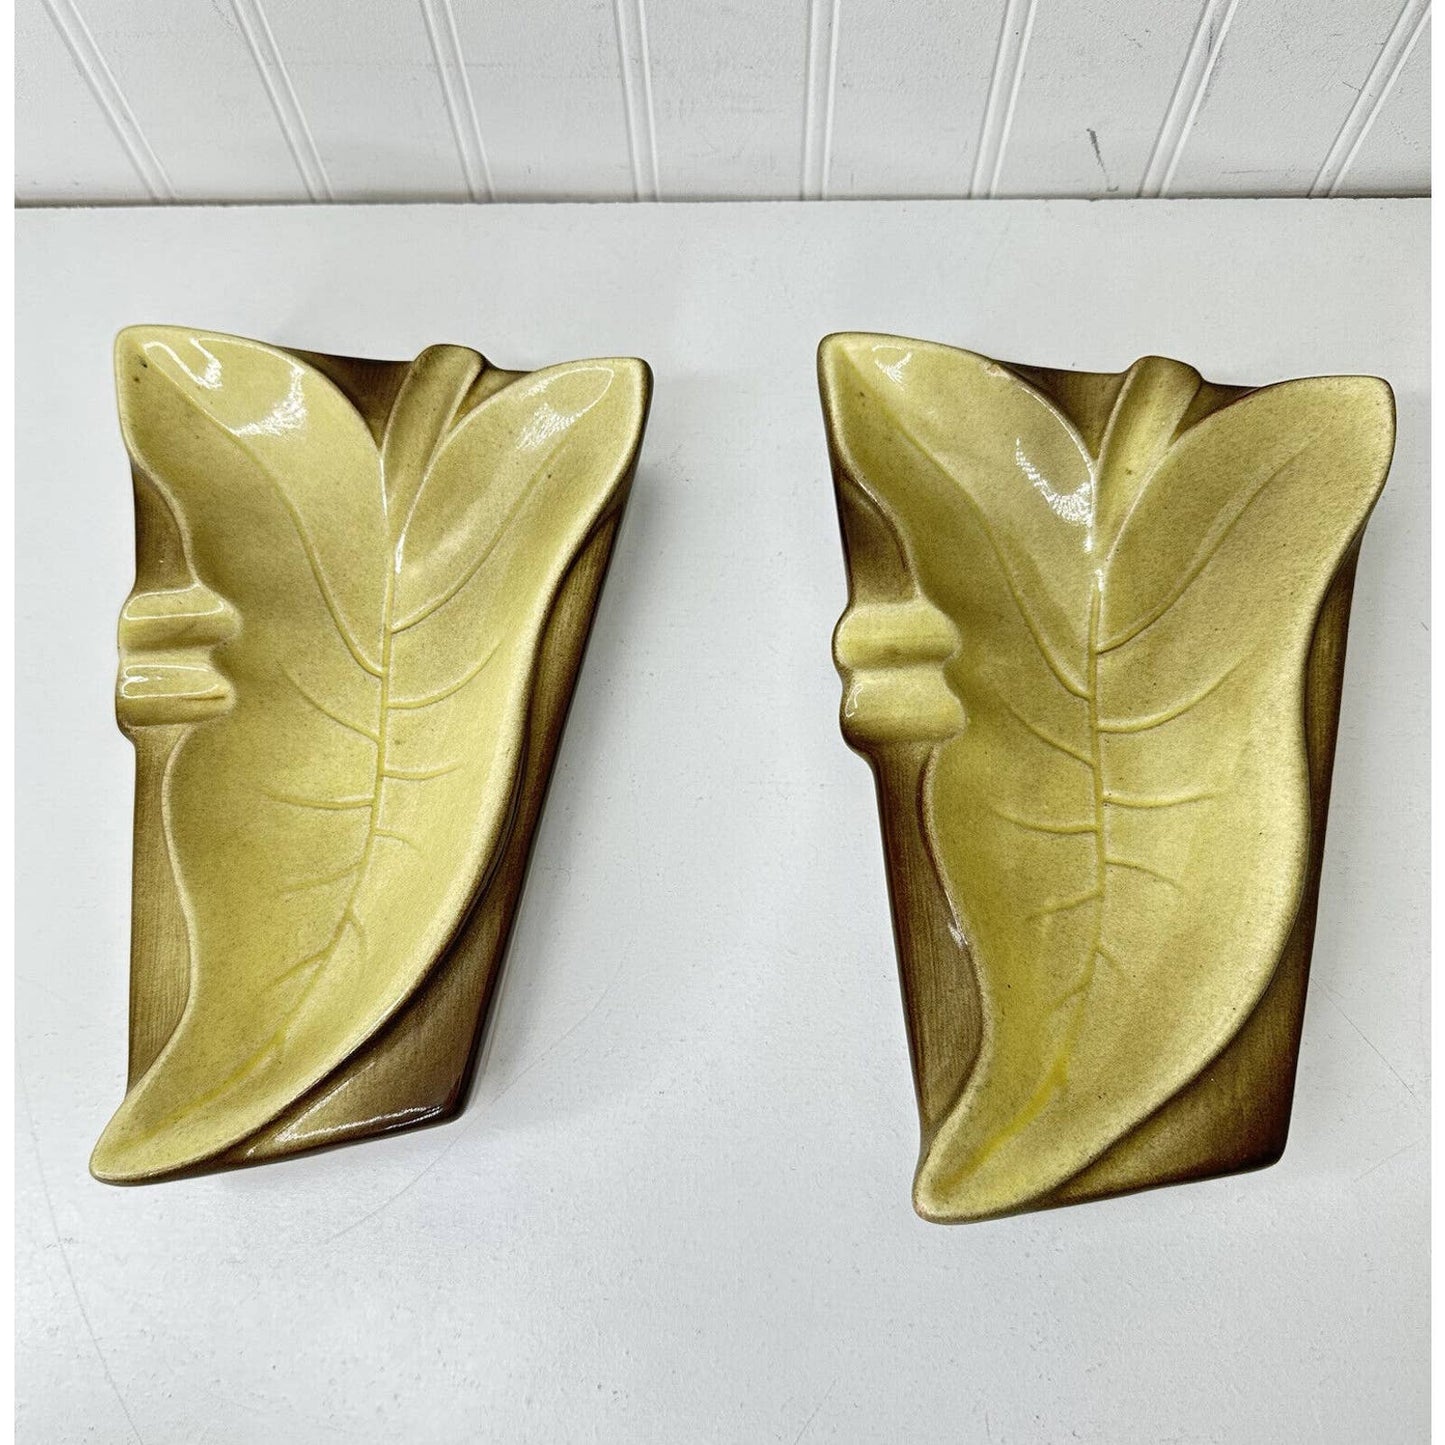 Pair Of Vintage Mid Century Modern Ceramic Leaf Ashtrays 1950s 1960s Atomic Age